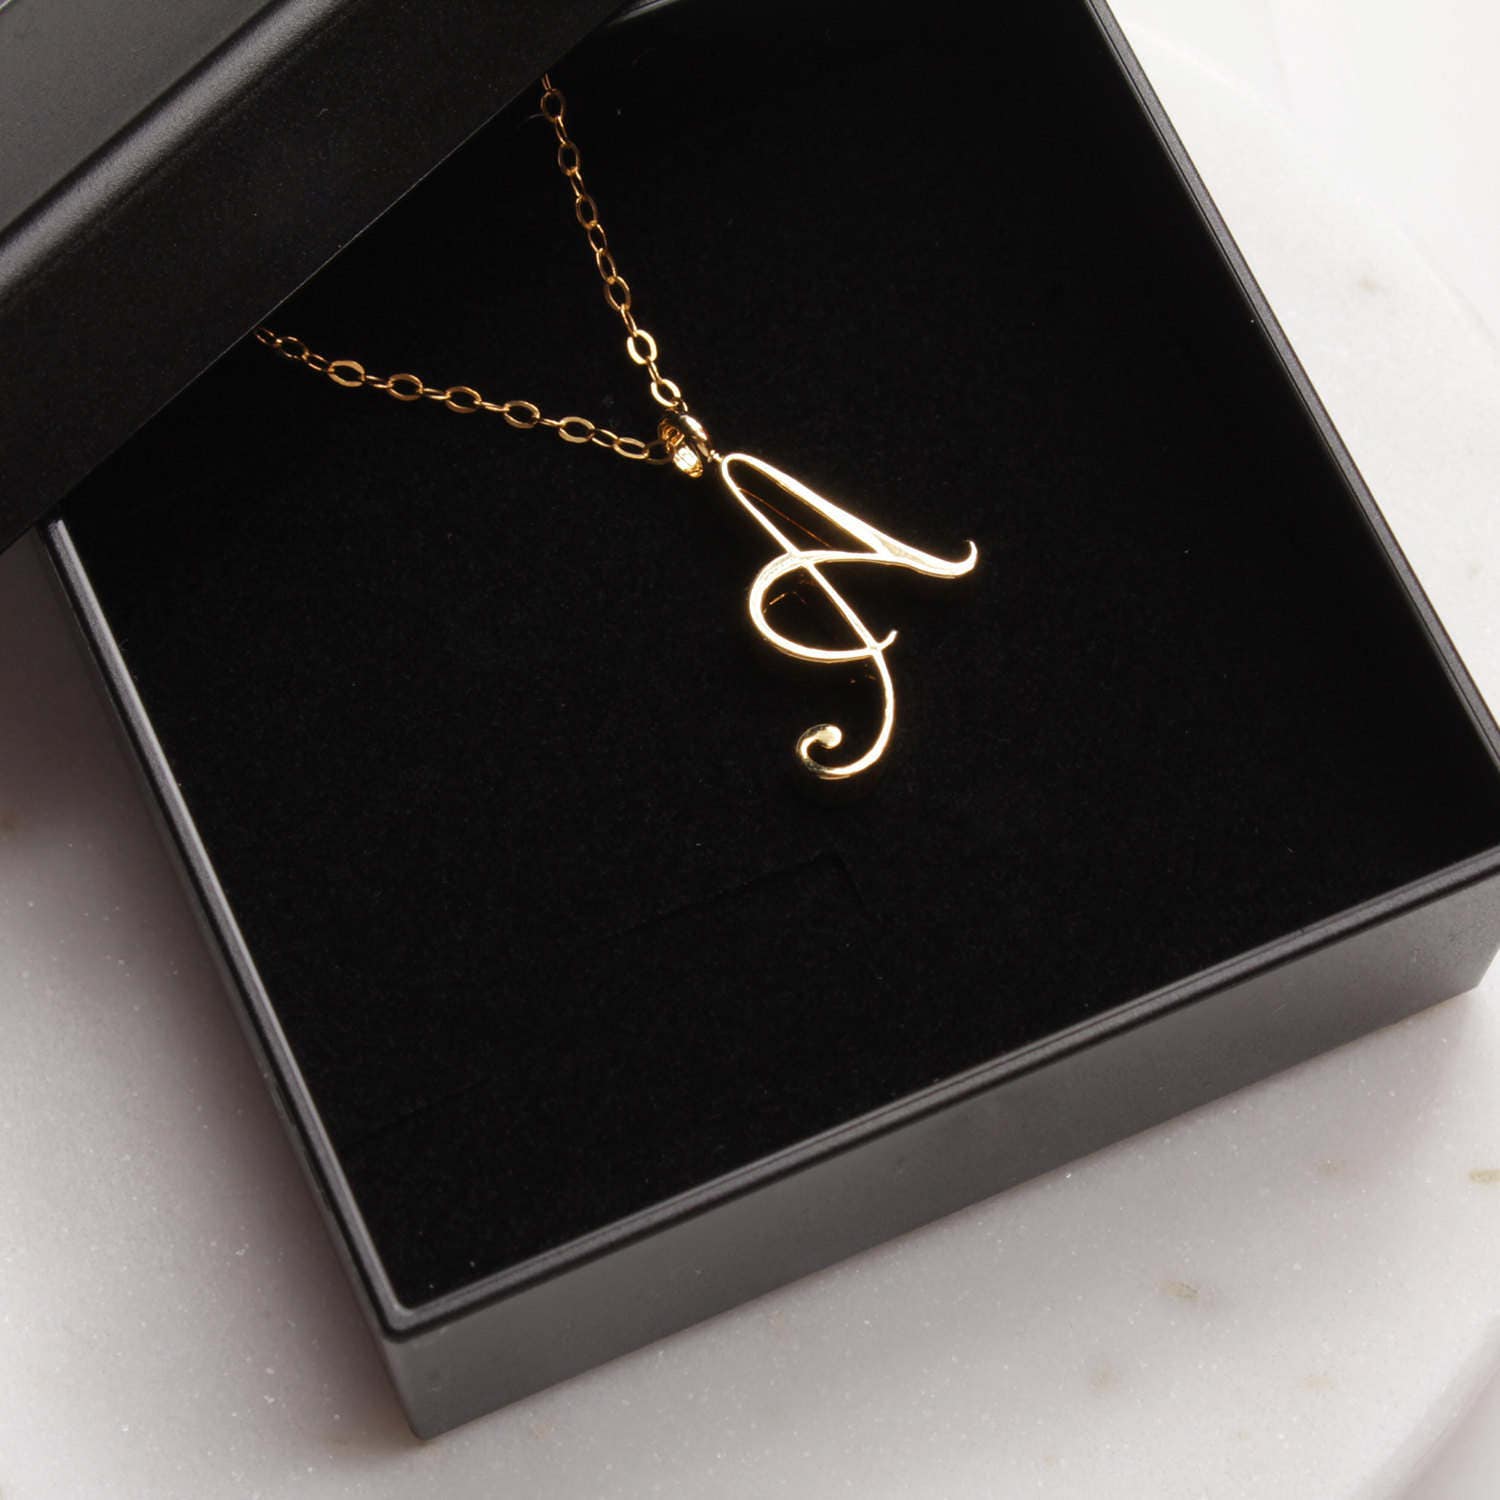 A Cursive Initial Gold Pendant Necklace Necklaces Soul & Little Rose   